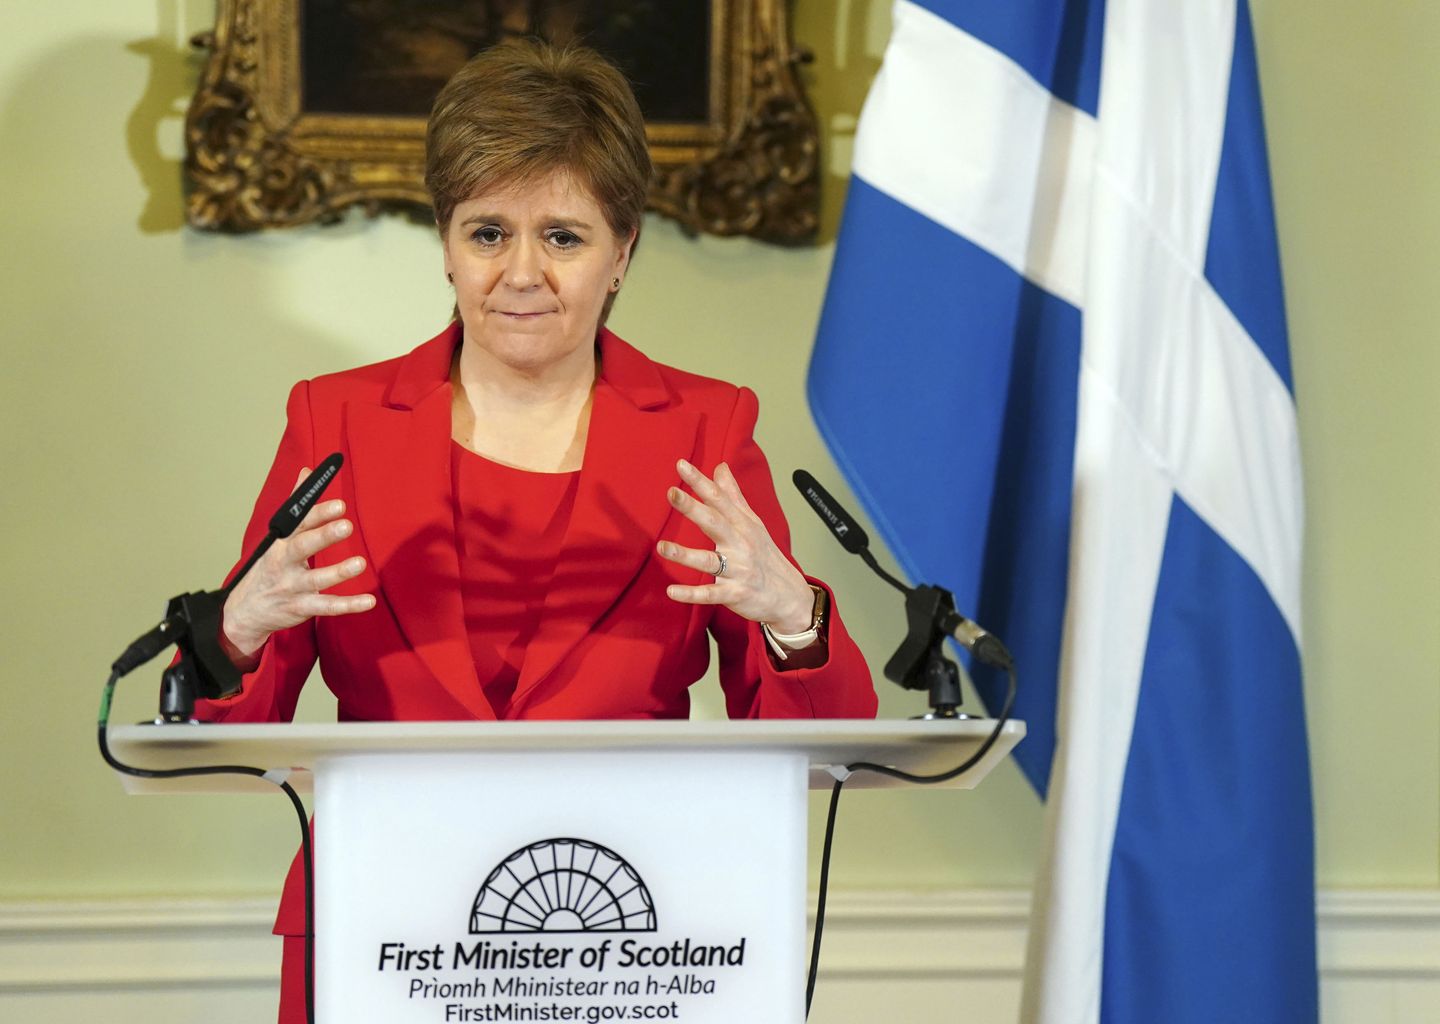 İskoç lider Nicola Sturgeon'un cinsiyet kimliğini belirleme çabası çıkış için suçlandı